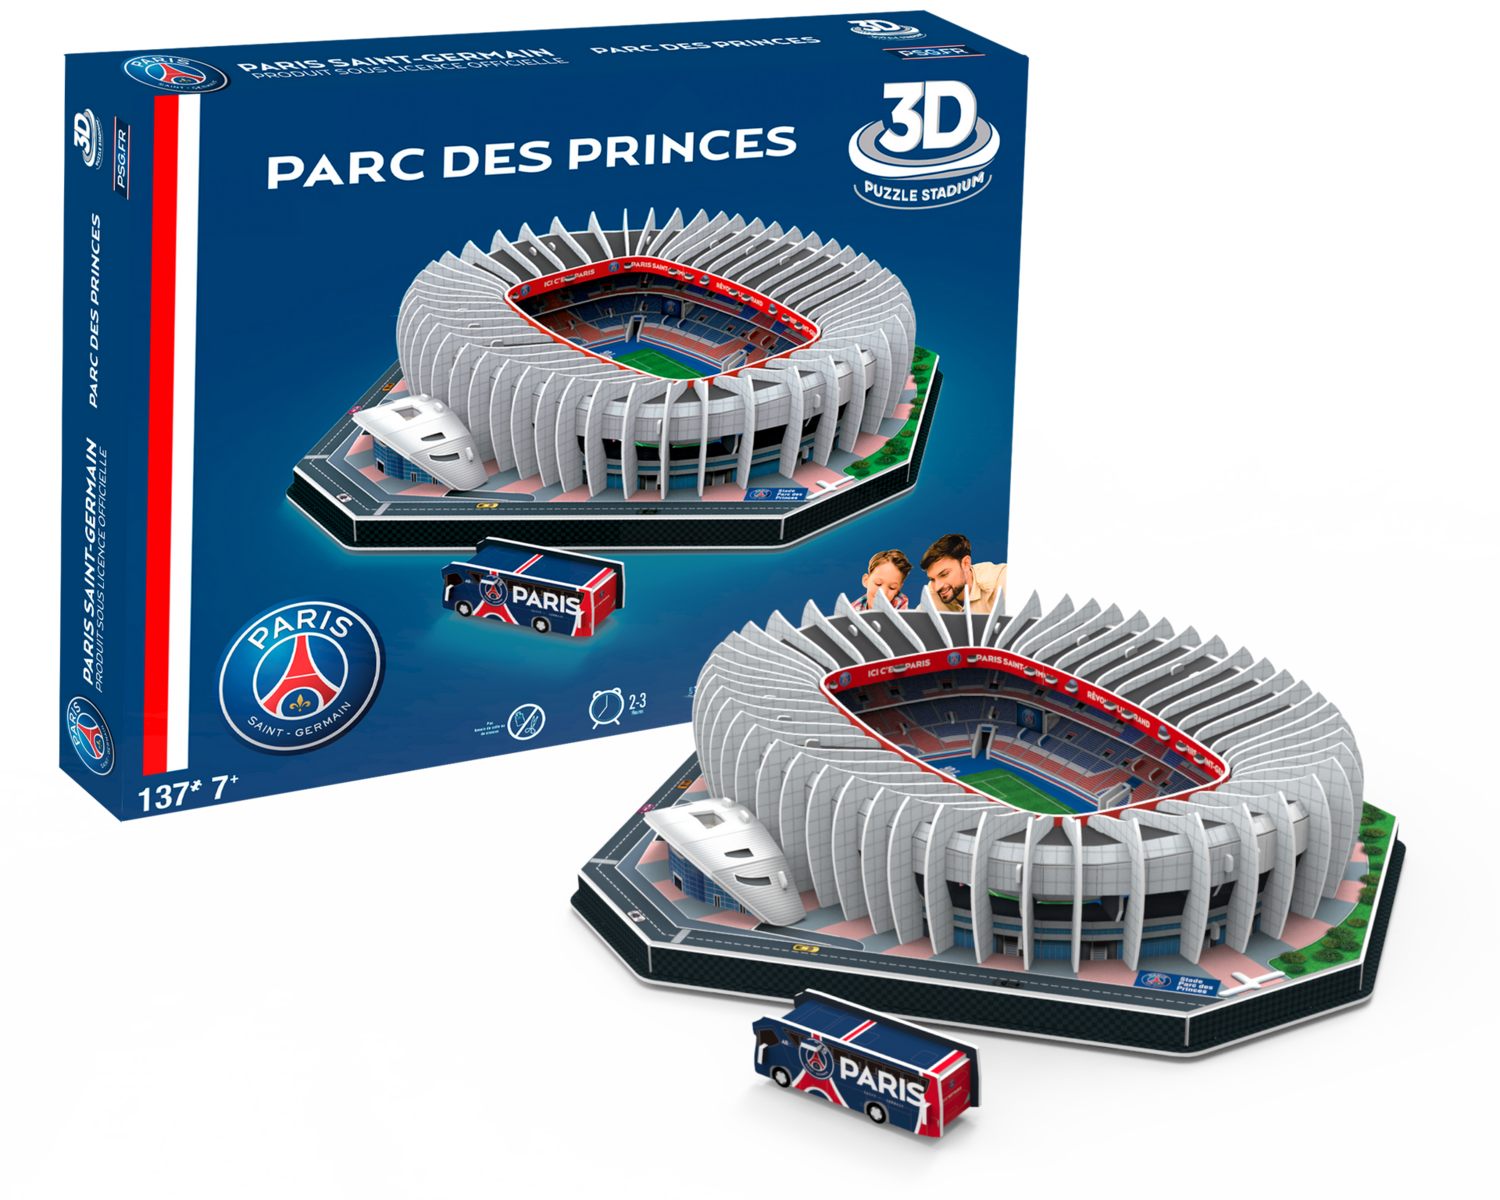 3D puzzel stadion Paris Saint Germain